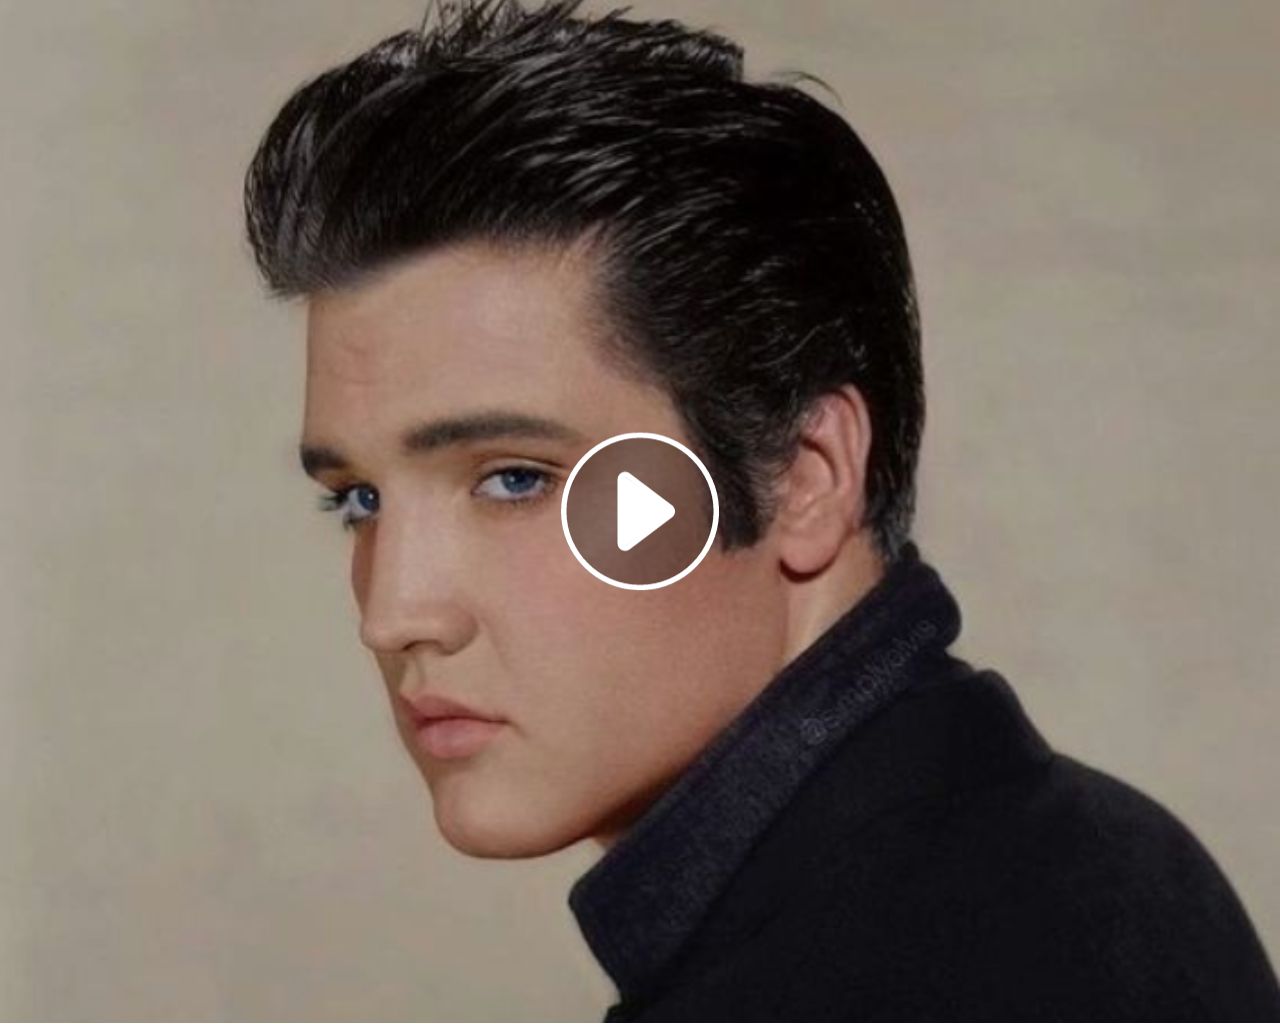 Elvis Presley - Just Pretend